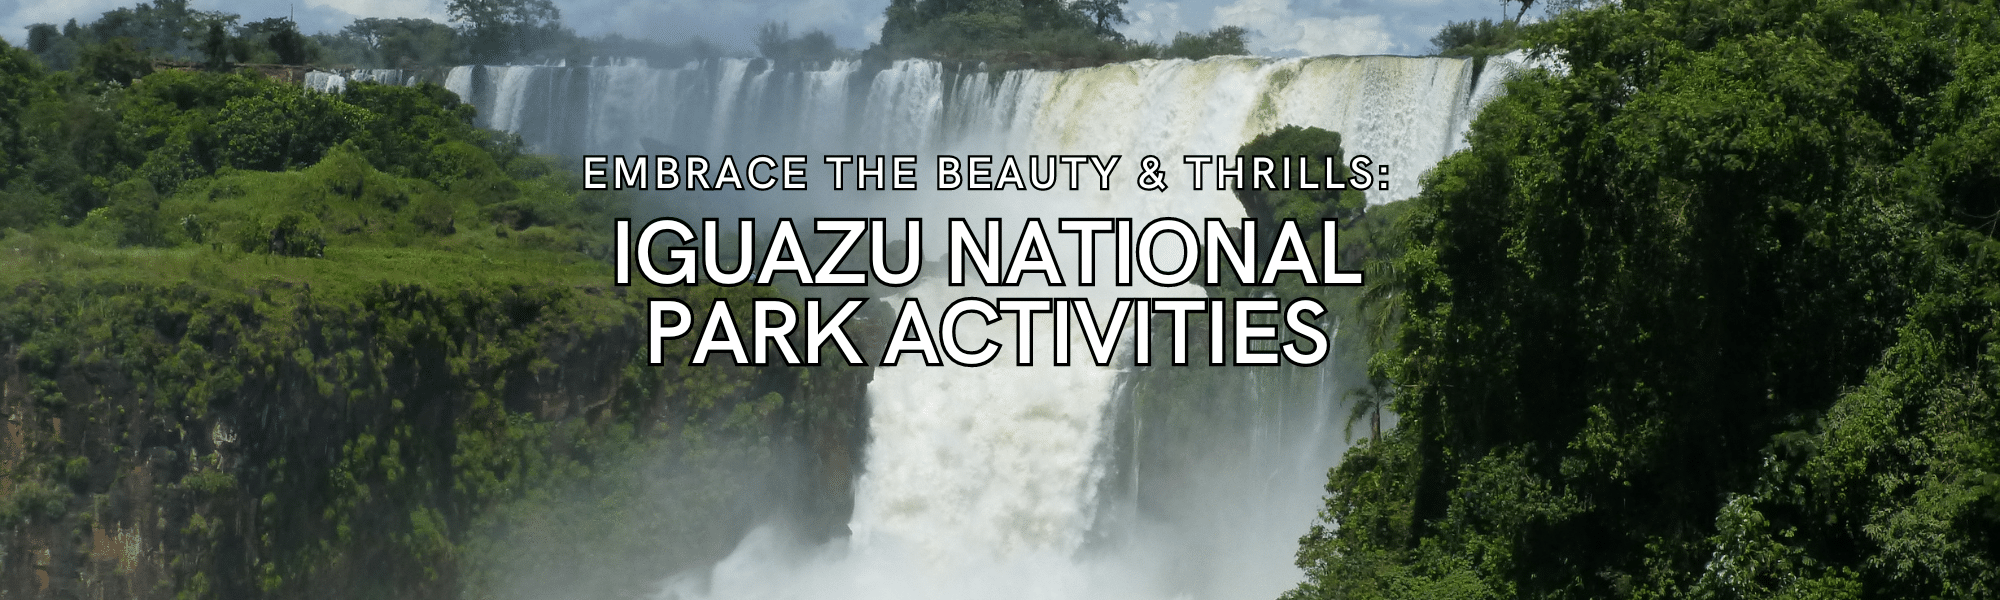 Iguazu National Park Activities